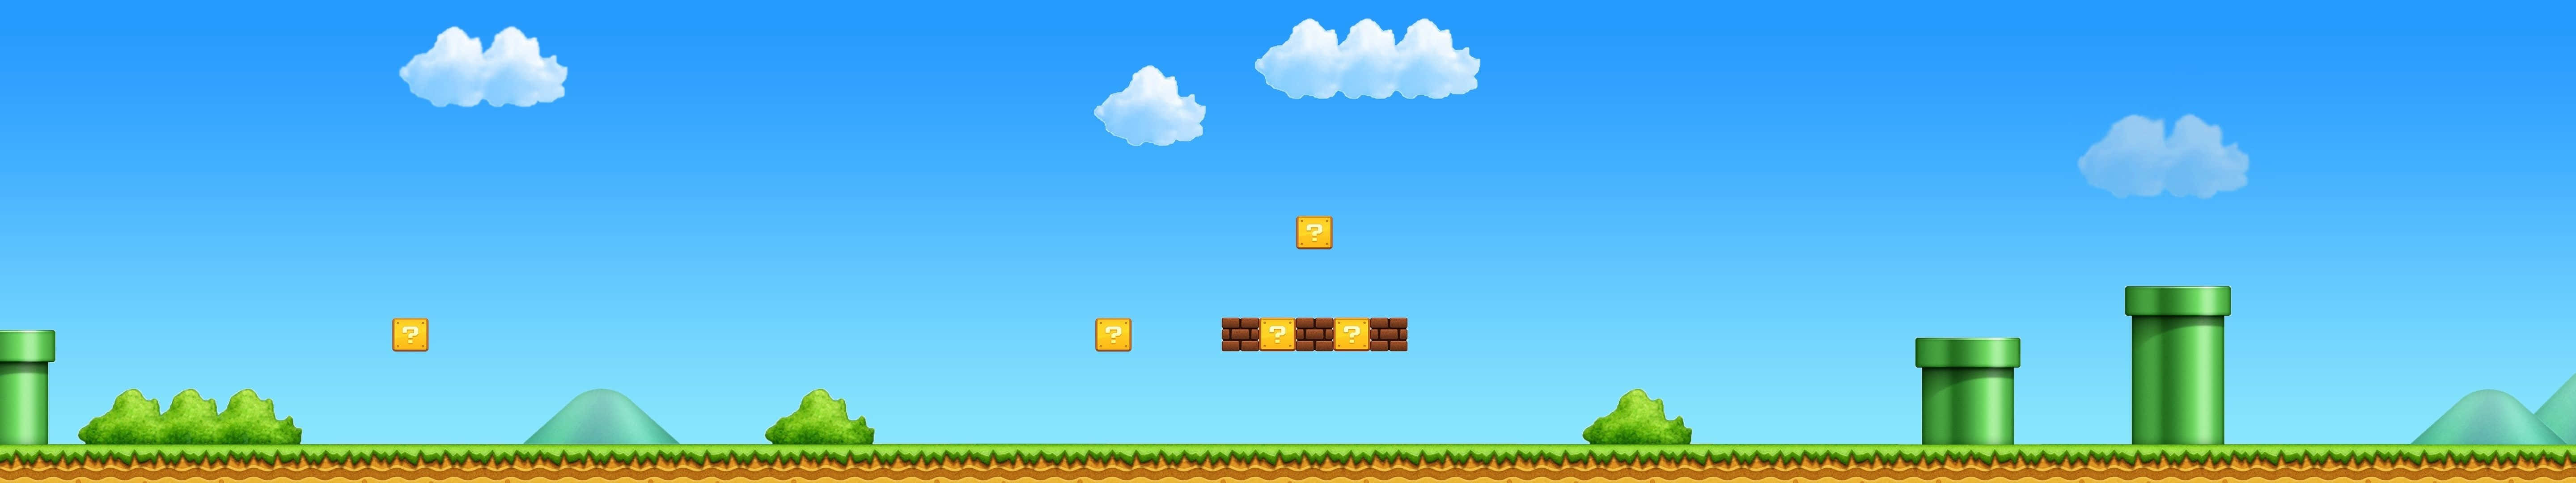 Enkelsuper Mario World För Pixel 3 Skärmsläckare (bakgrundsbild På Datorn Eller Mobilen).